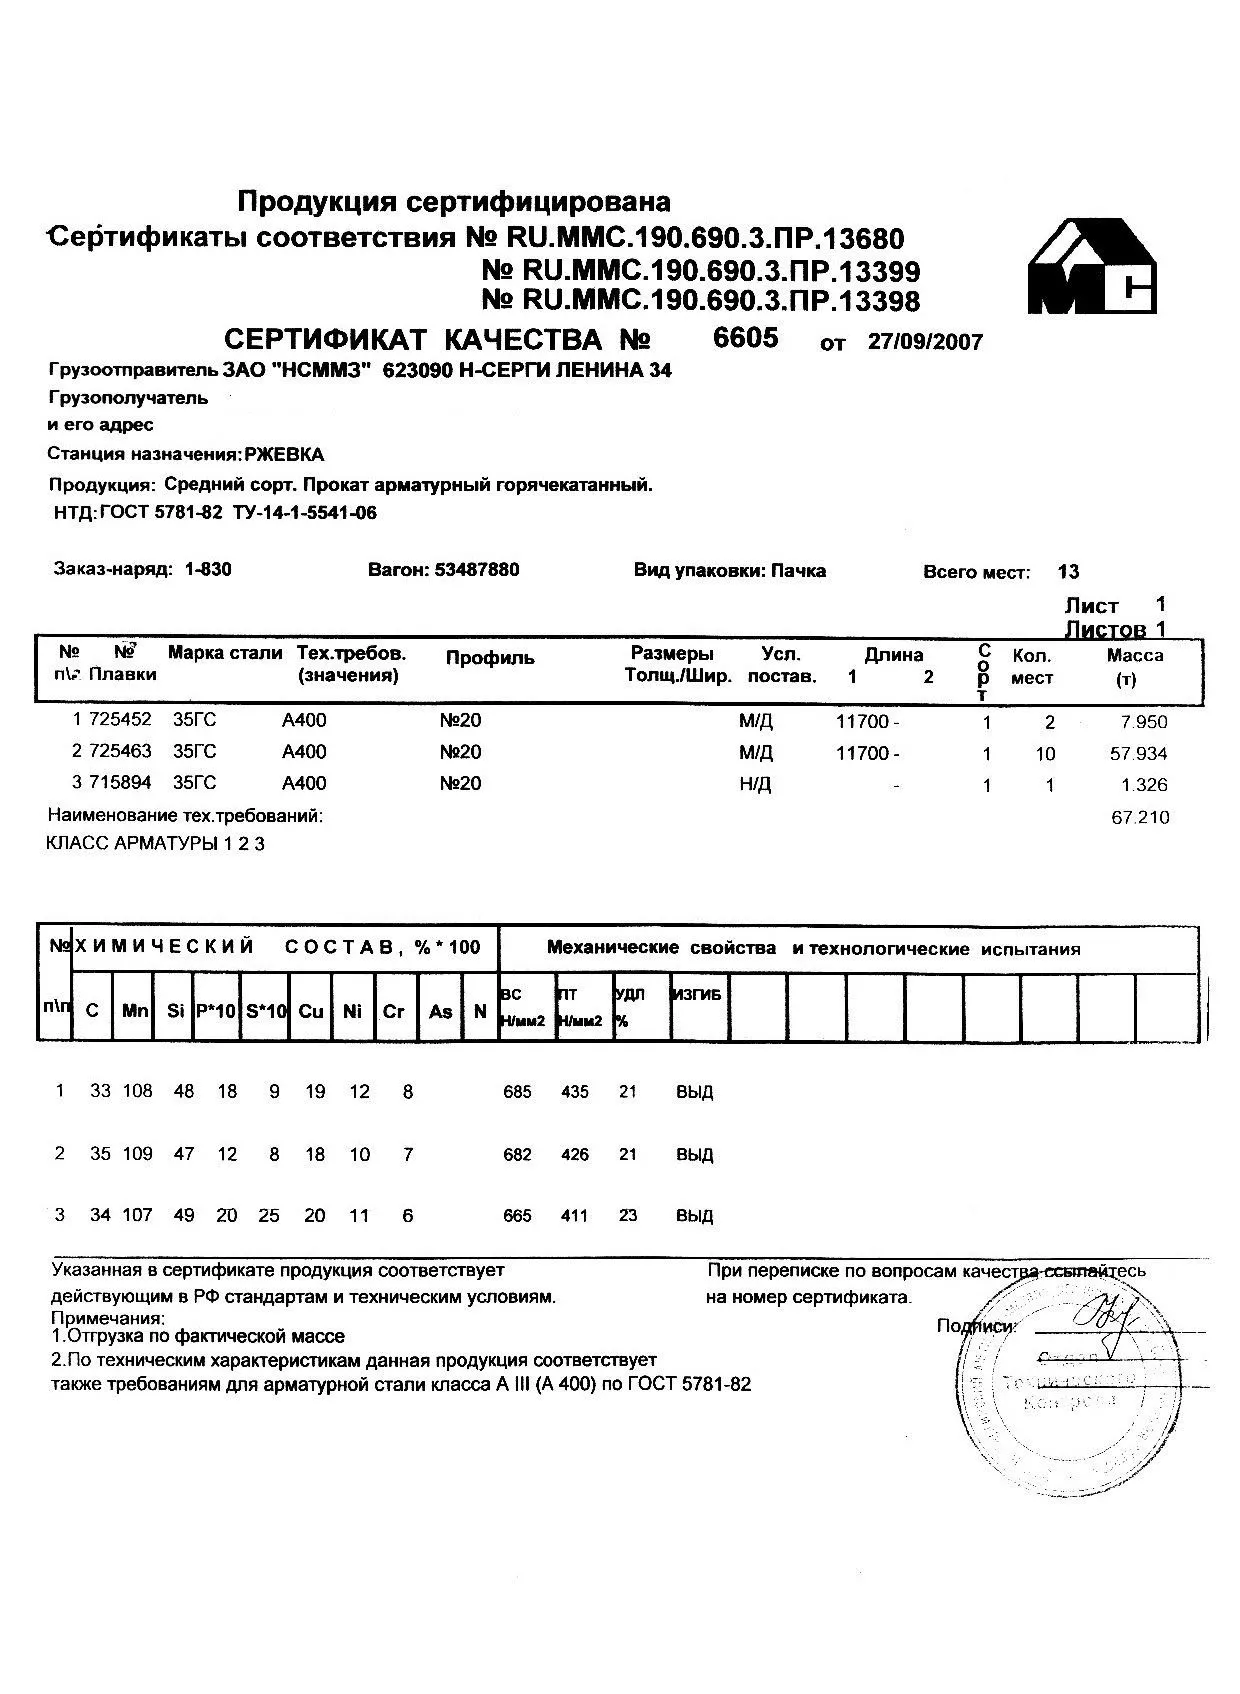 Сертификат на арматуру 20 марки 35ГС от 2007-09